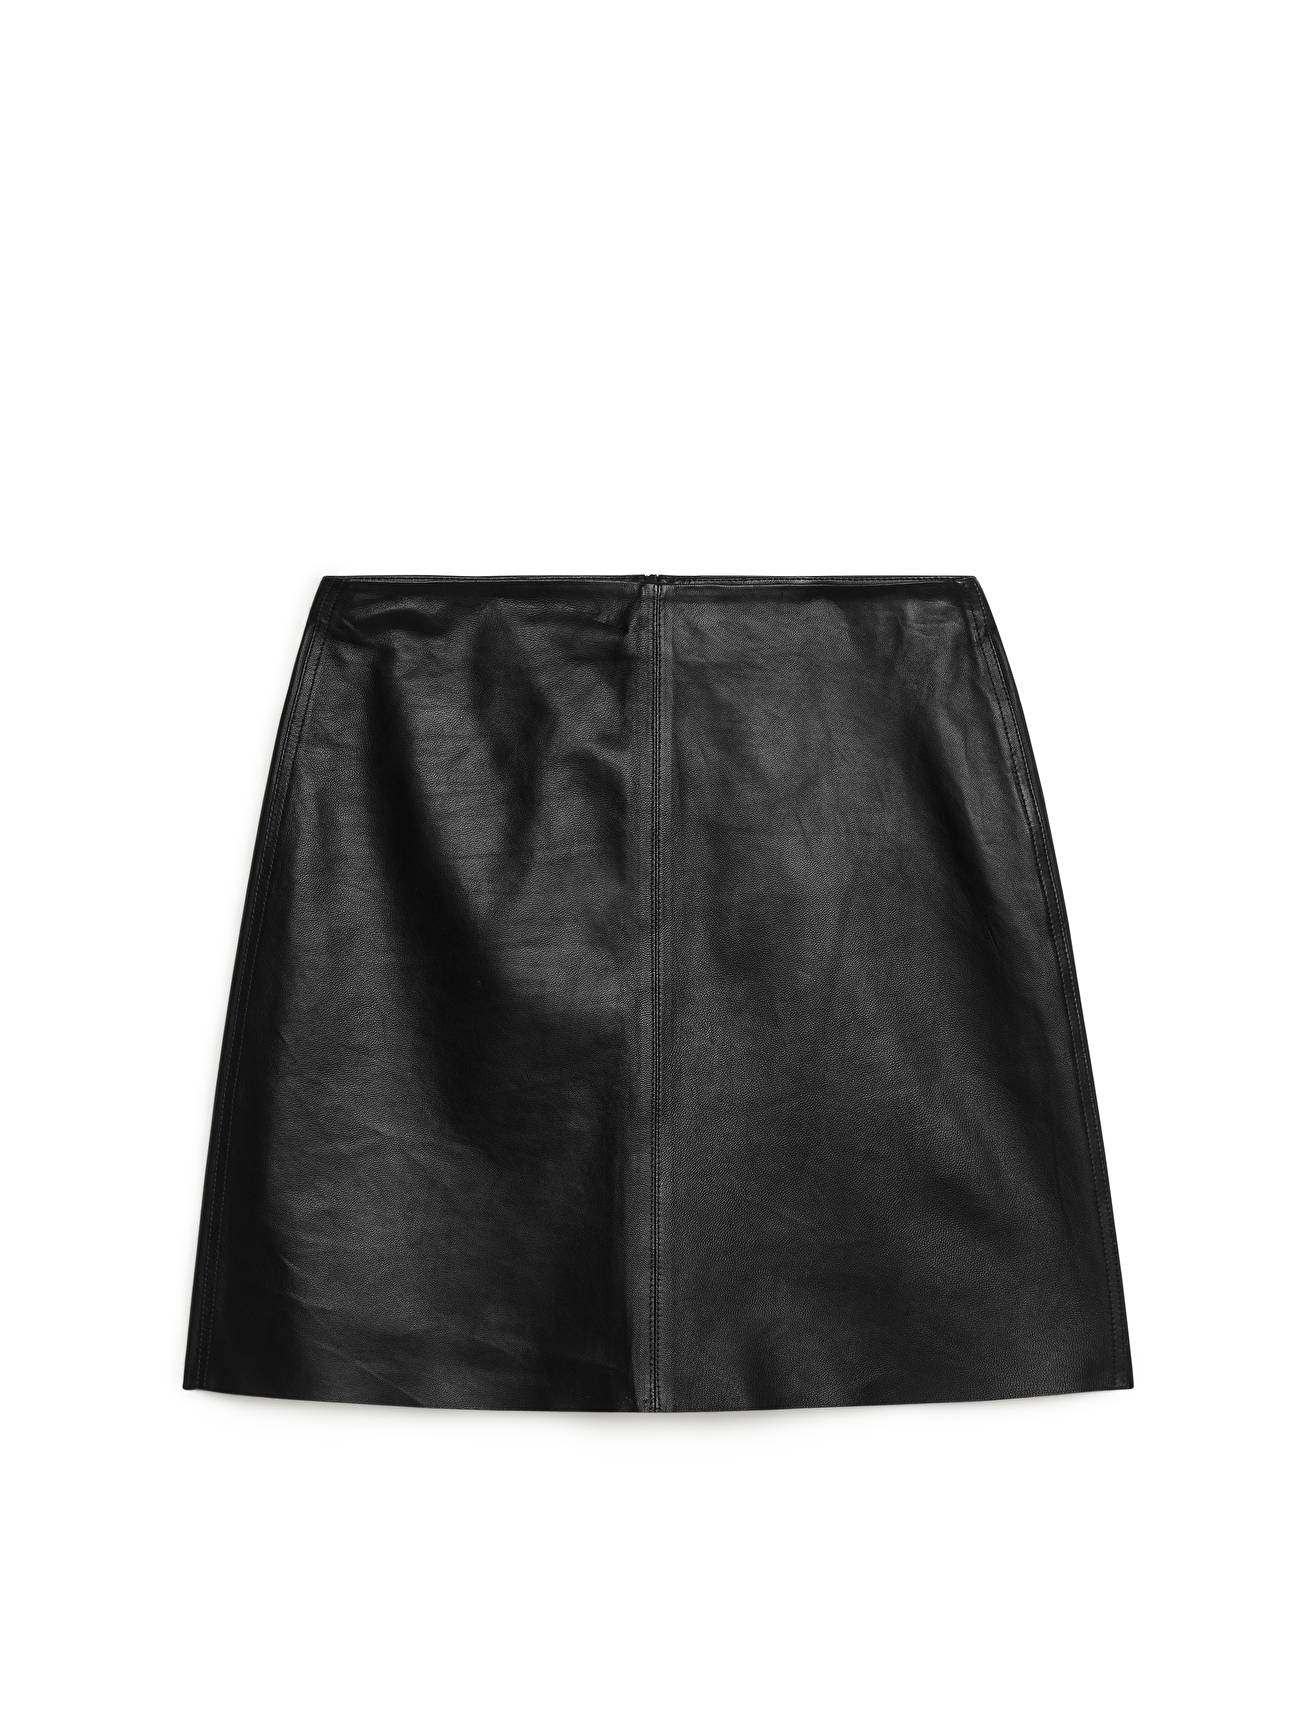 Arket Leather Skirt